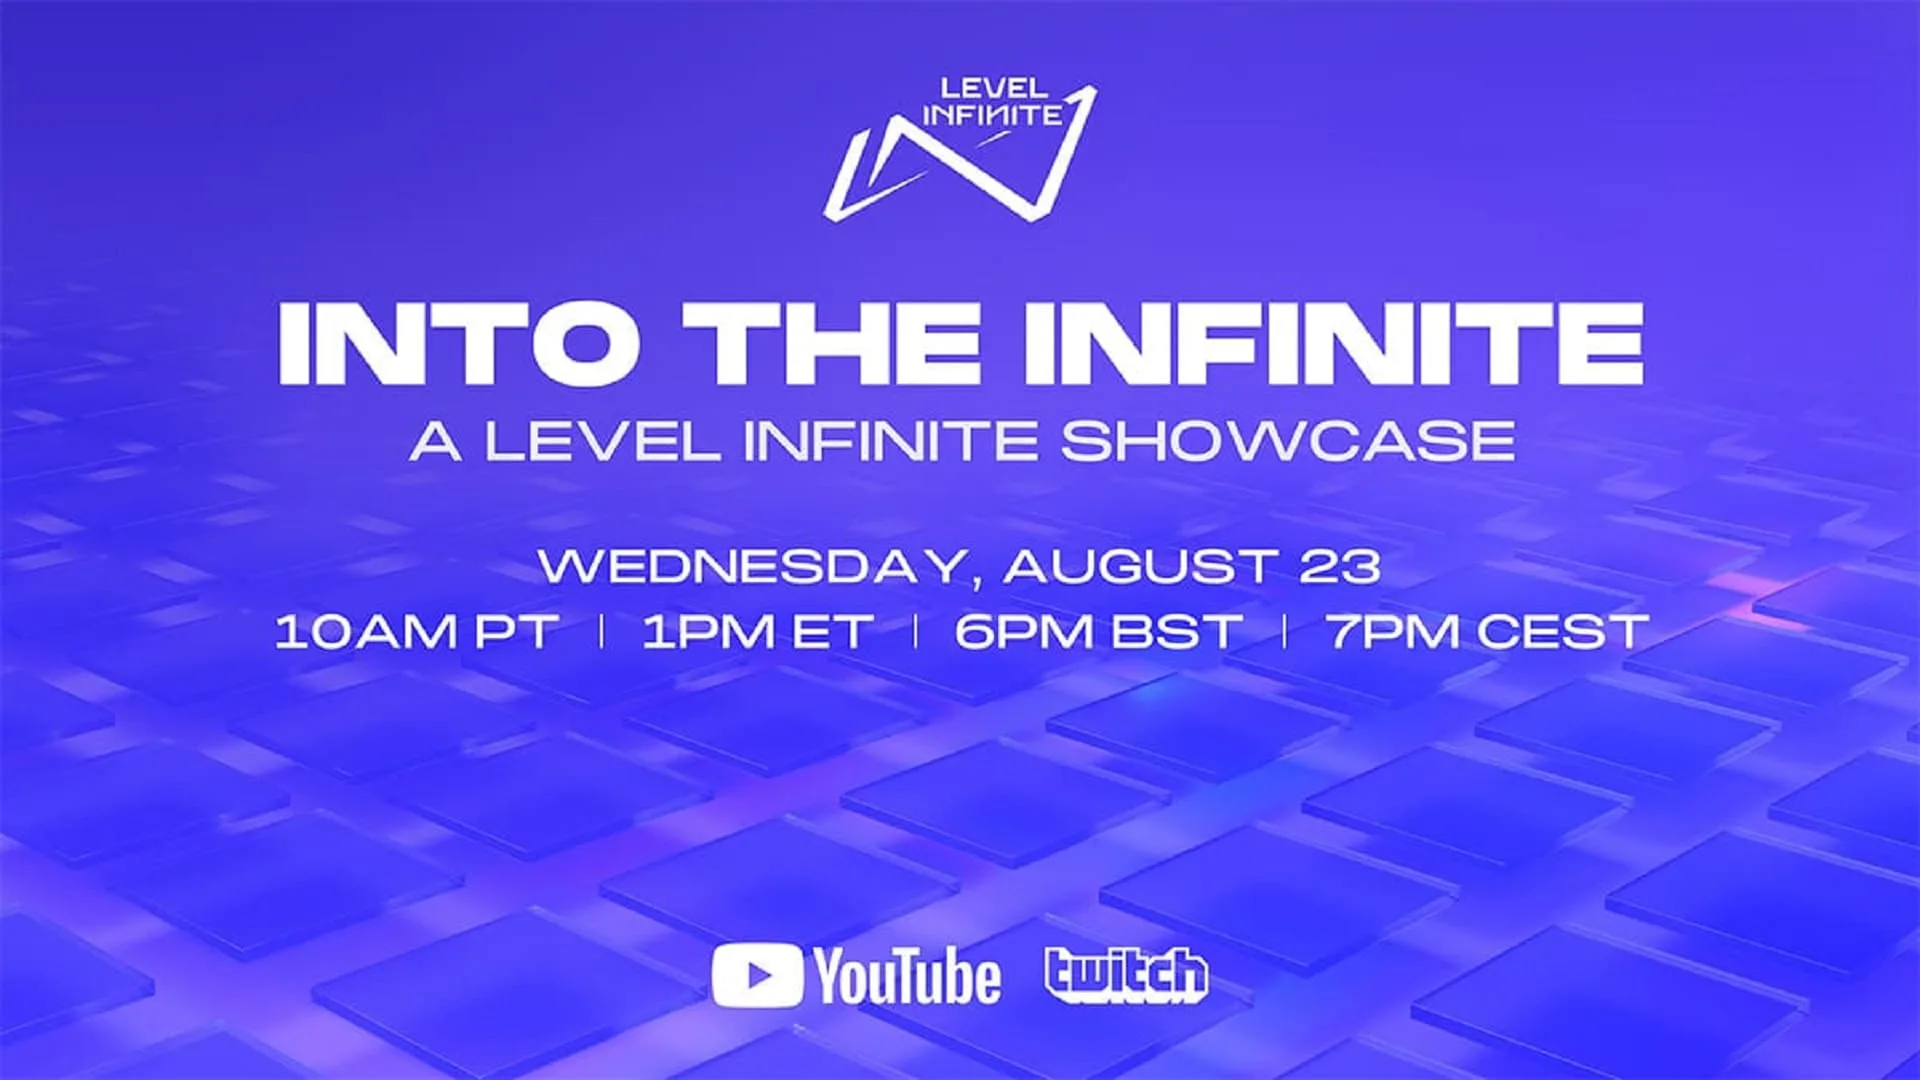 A Level Infinite inicia a sua presença na Gamescom com "Into the Infinite: A Level Infinite Showcase"